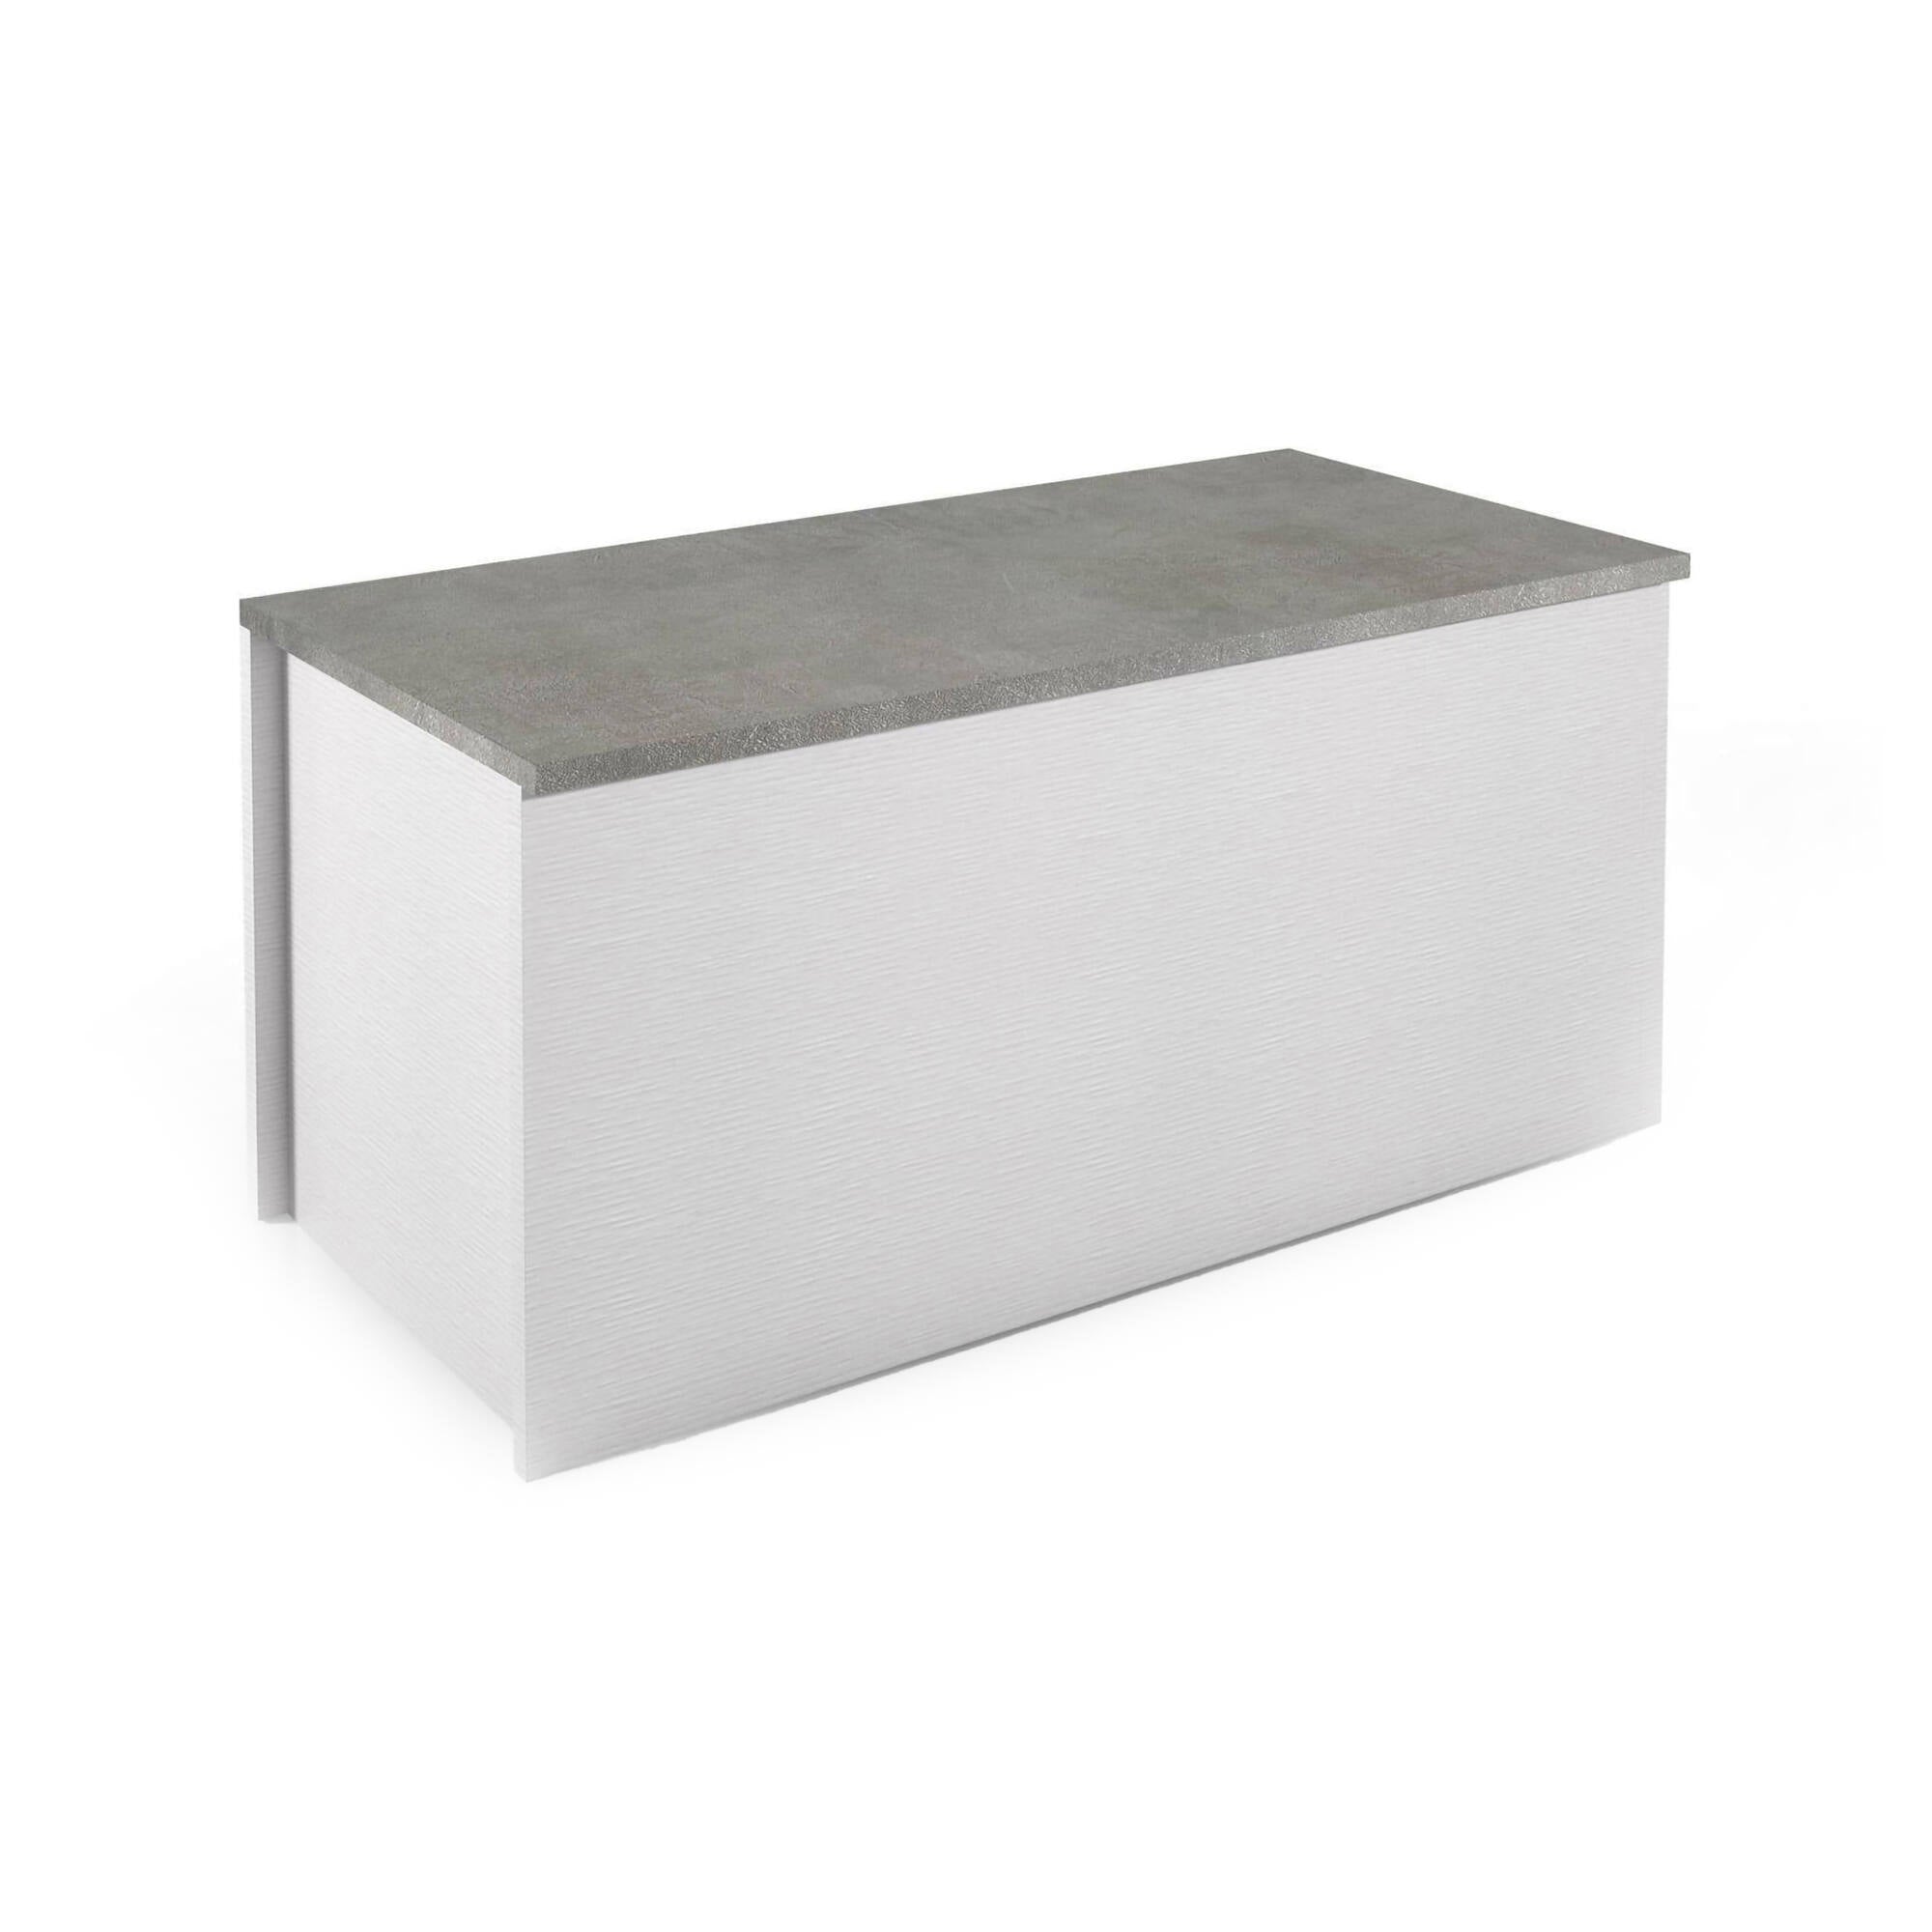 Baule Miltonia, Capiente box contenitore multiuso, Cassapanca moderna, Made in Italy, Cm 90x45h45, Bianco e Cemento